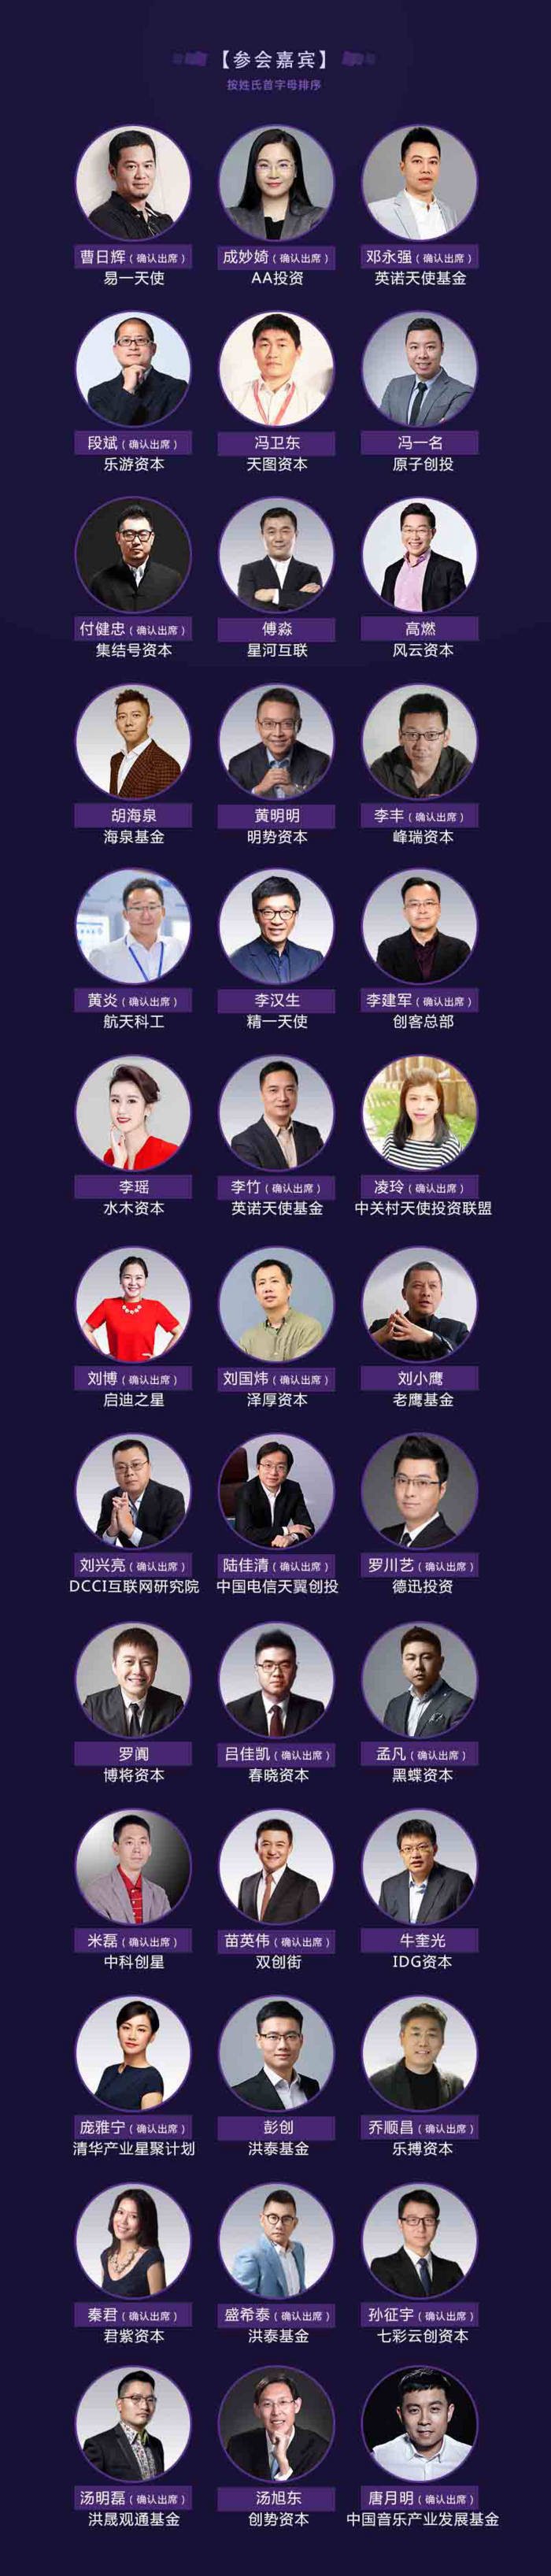 2017年中国天使投资峰会暨第二届金投榜颁奖盛典3